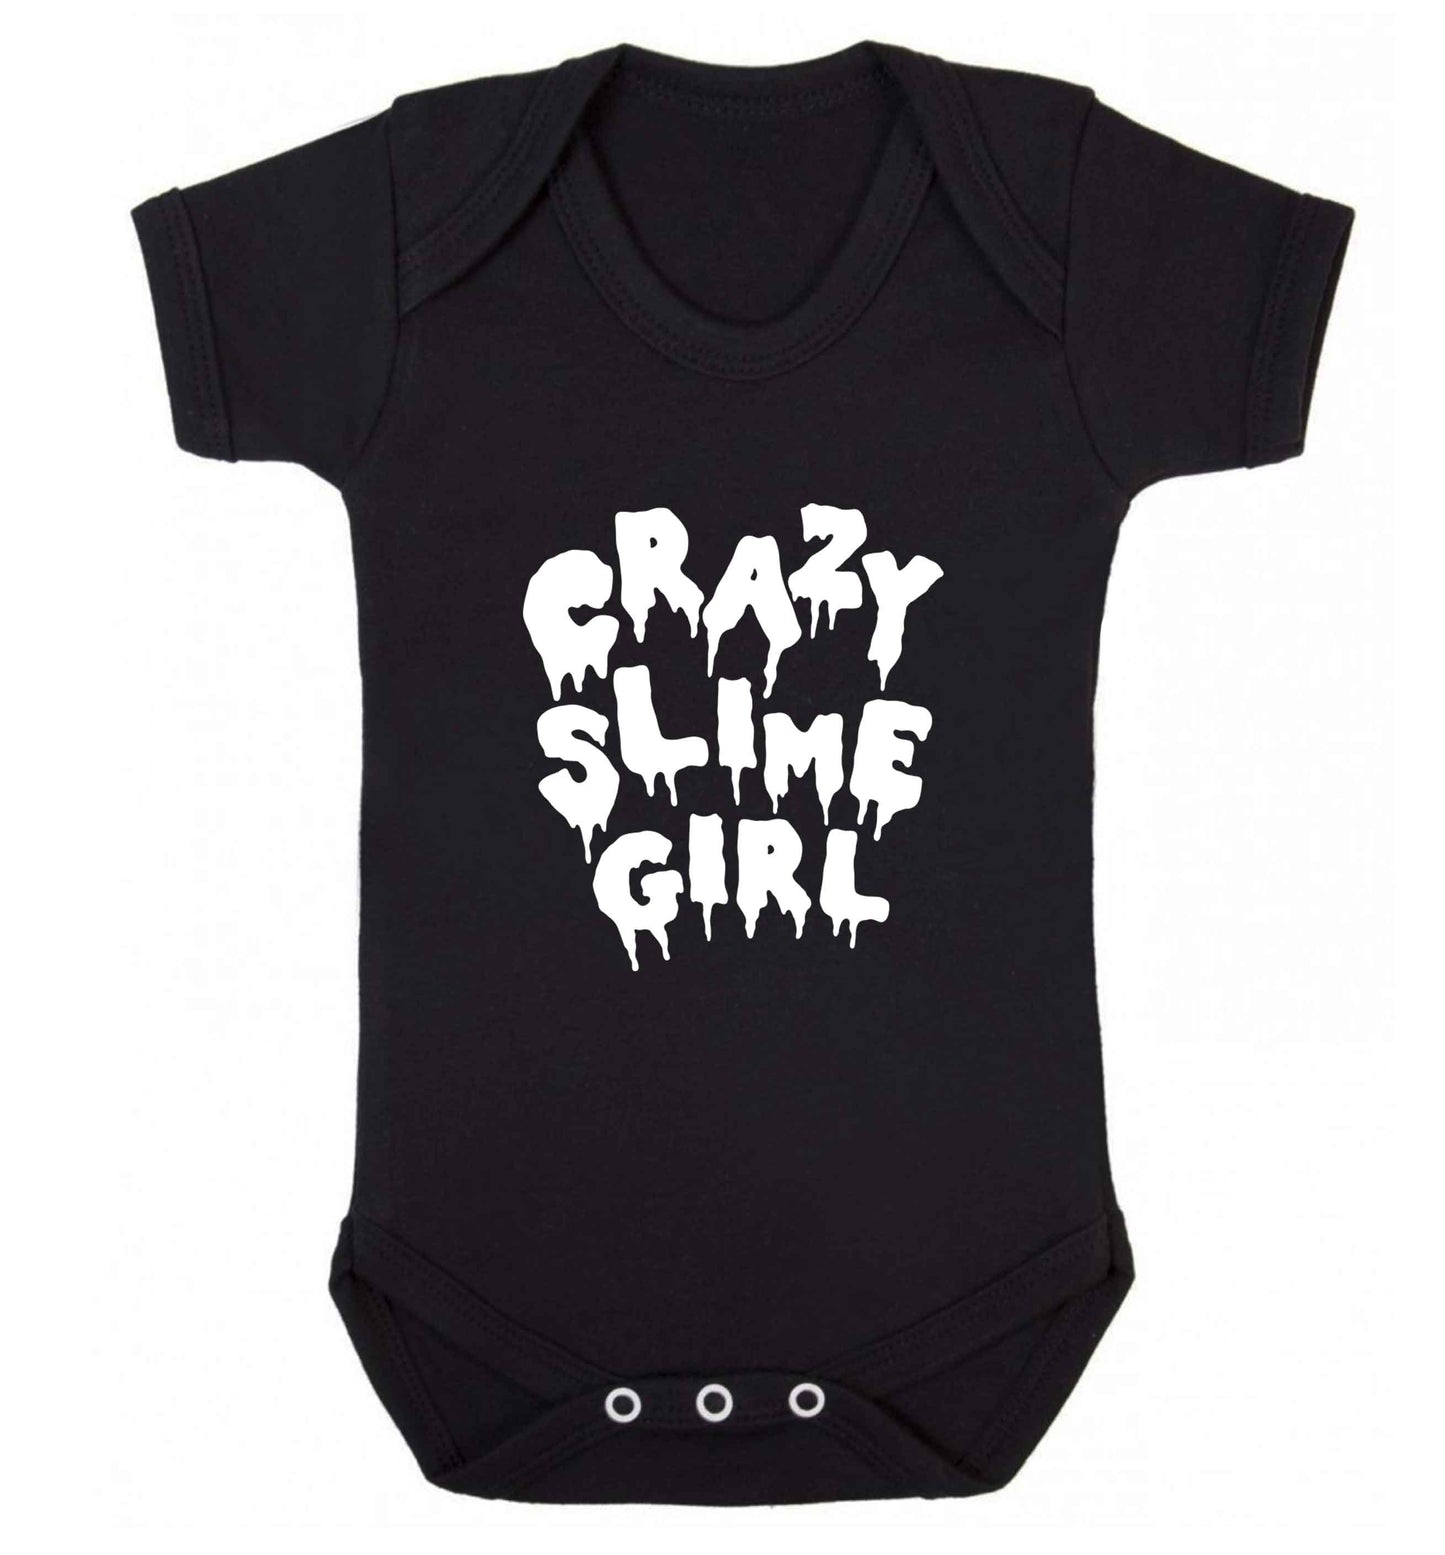 Crazy slime girl baby vest black 18-24 months